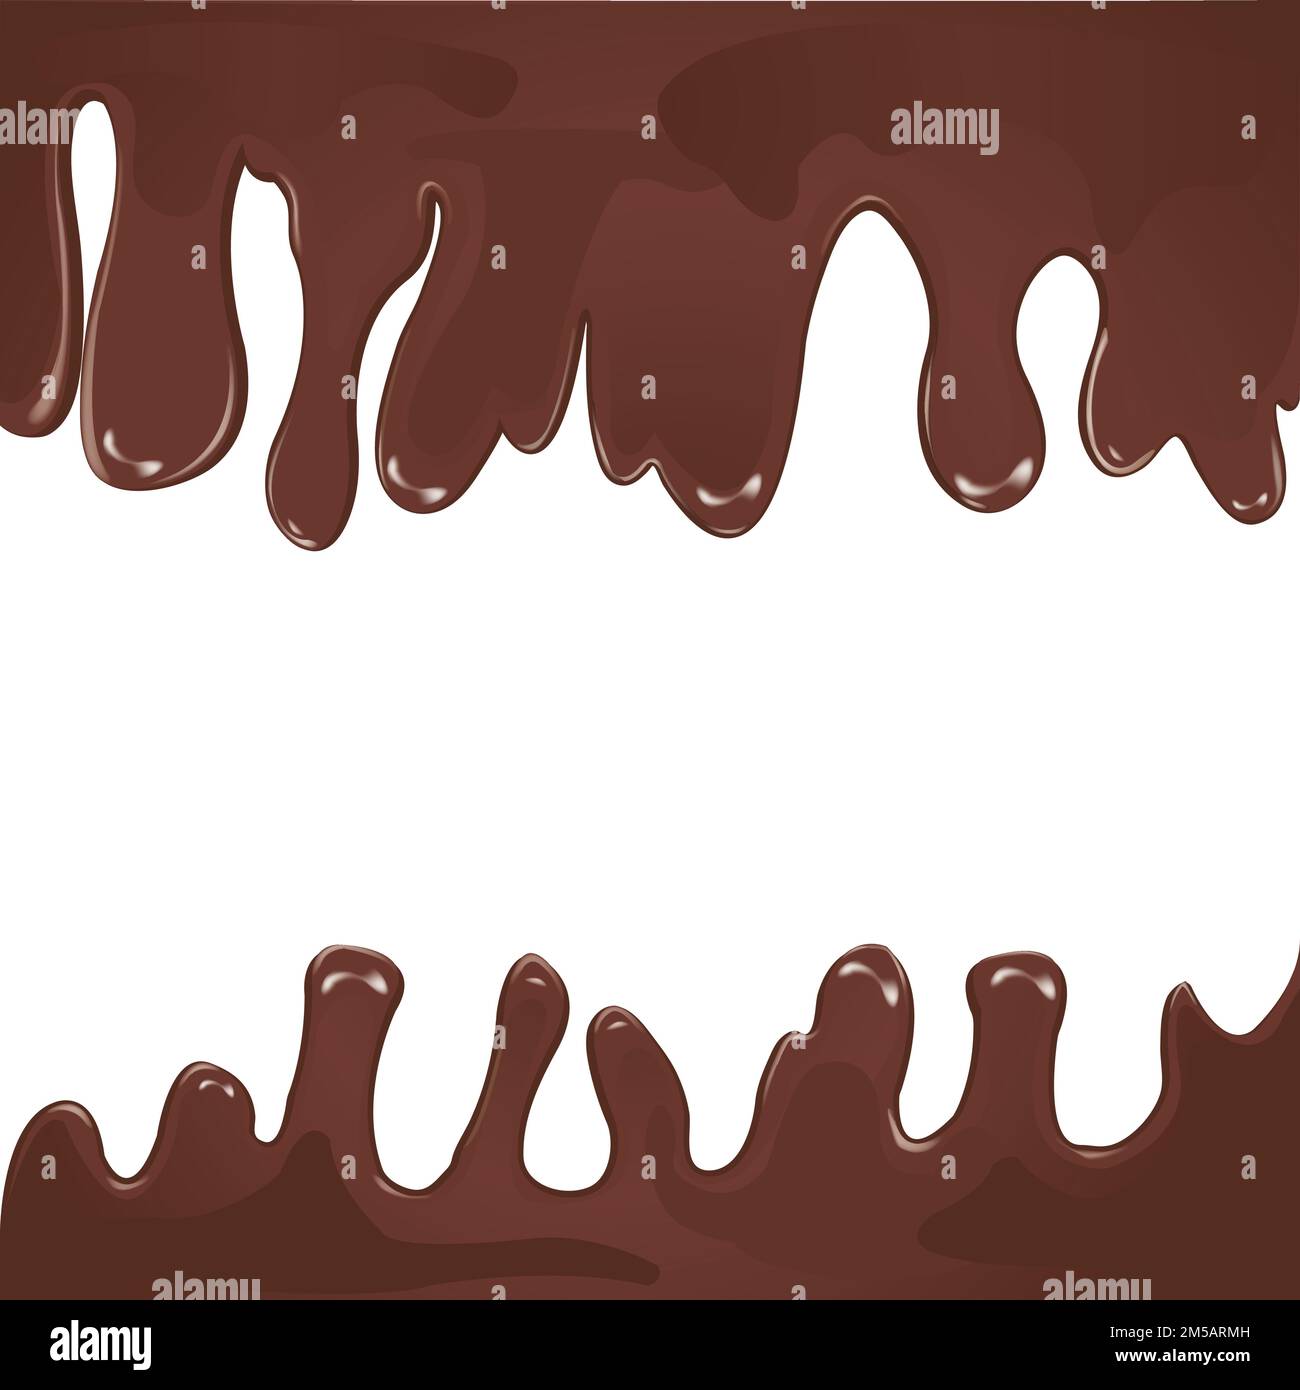 Geschmolzene Schokolade Vektor mit weißem Hintergrund; Design der schmelzenden Schokolade mit Raum für Worte; Stock Vektor